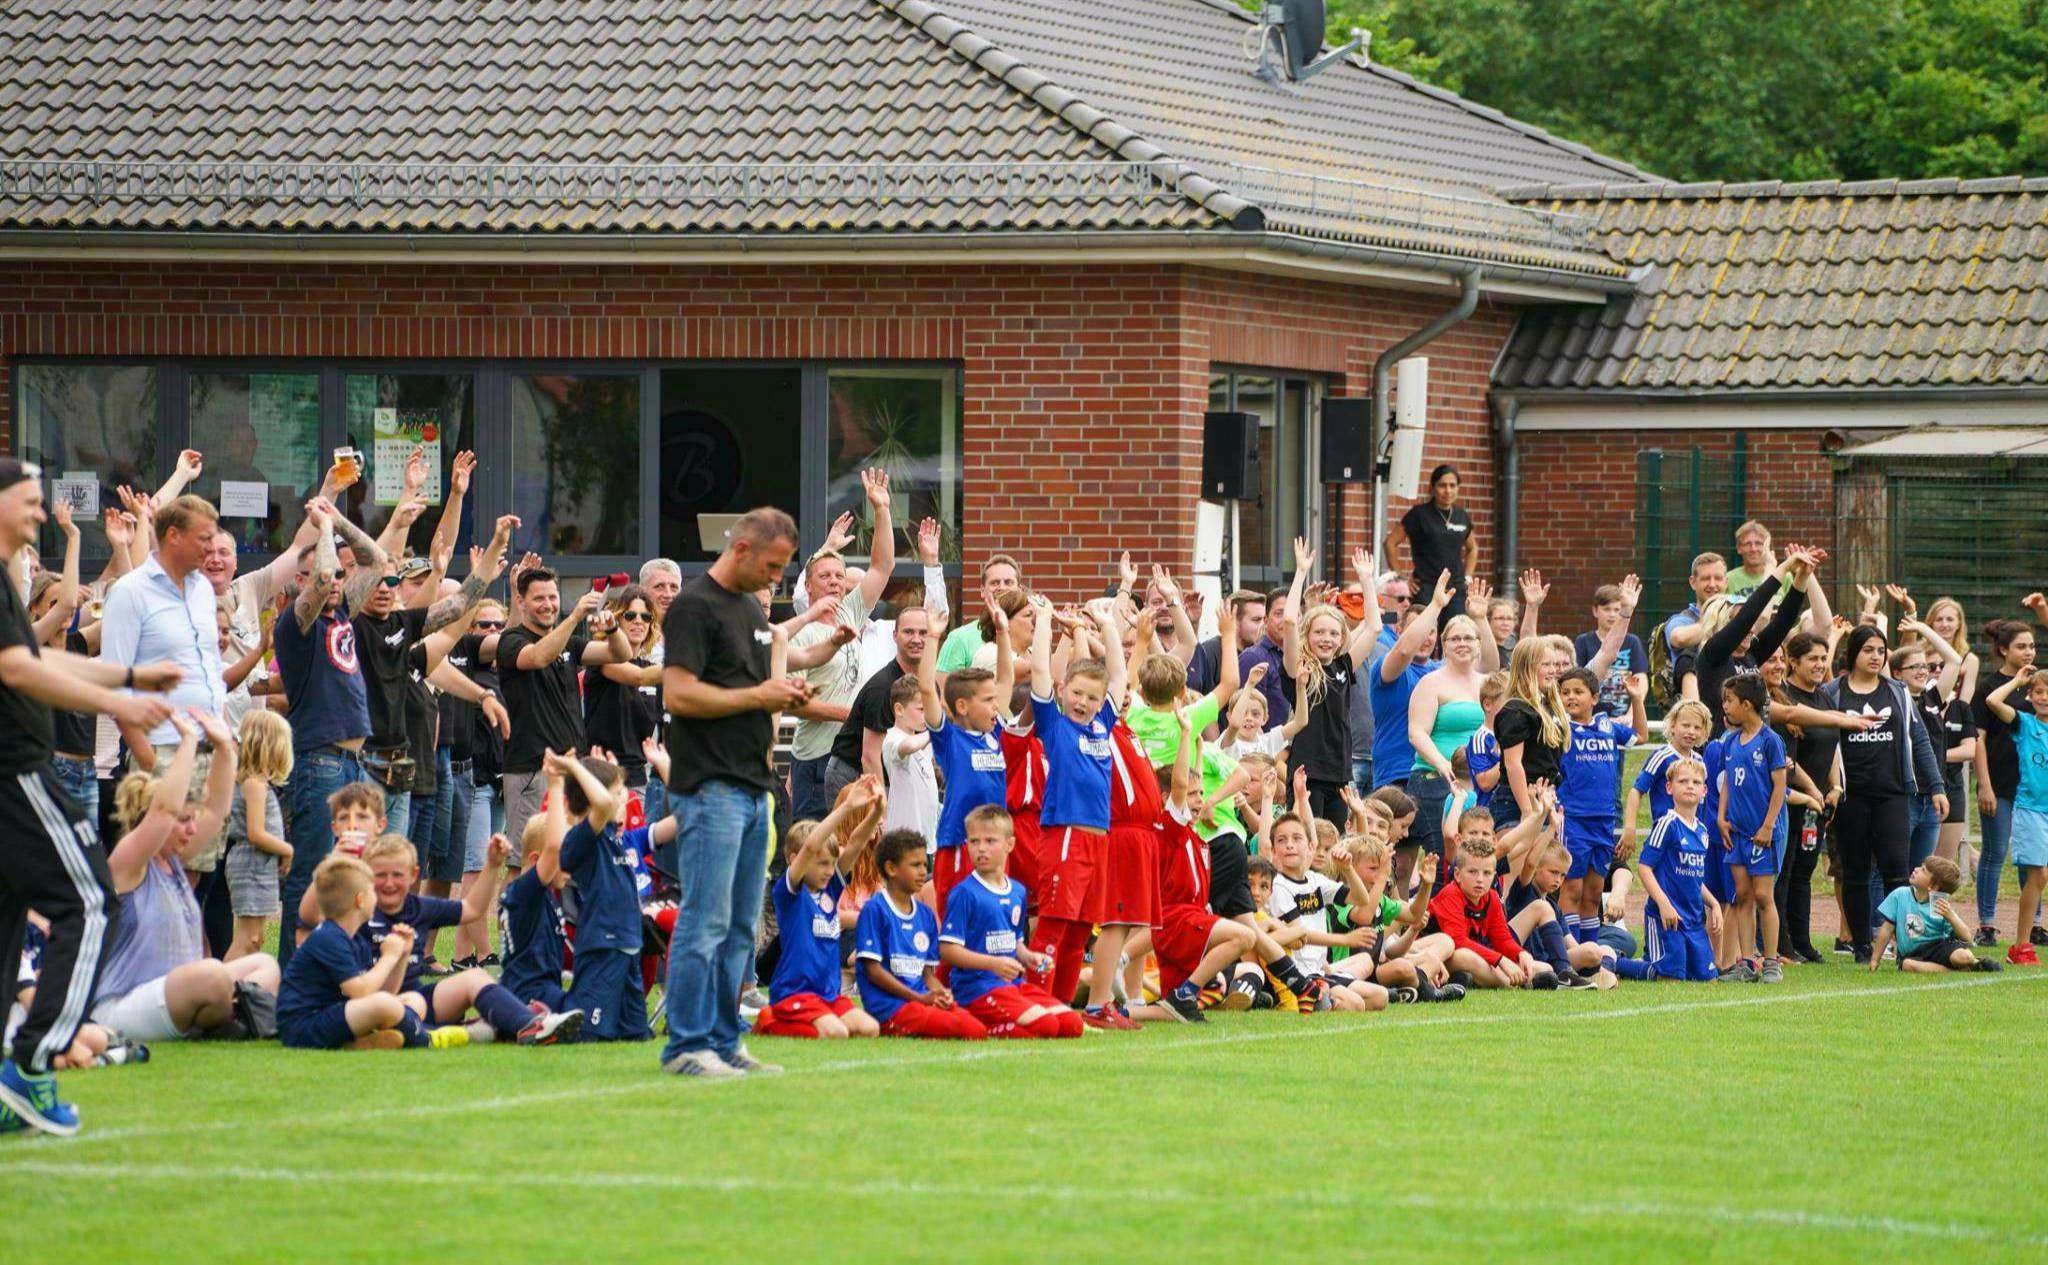 Gute Stimmung, wie auf diesem Foto, wird auch für das anstehende Jugendfußballturnier des TSV Bassen erwartet.